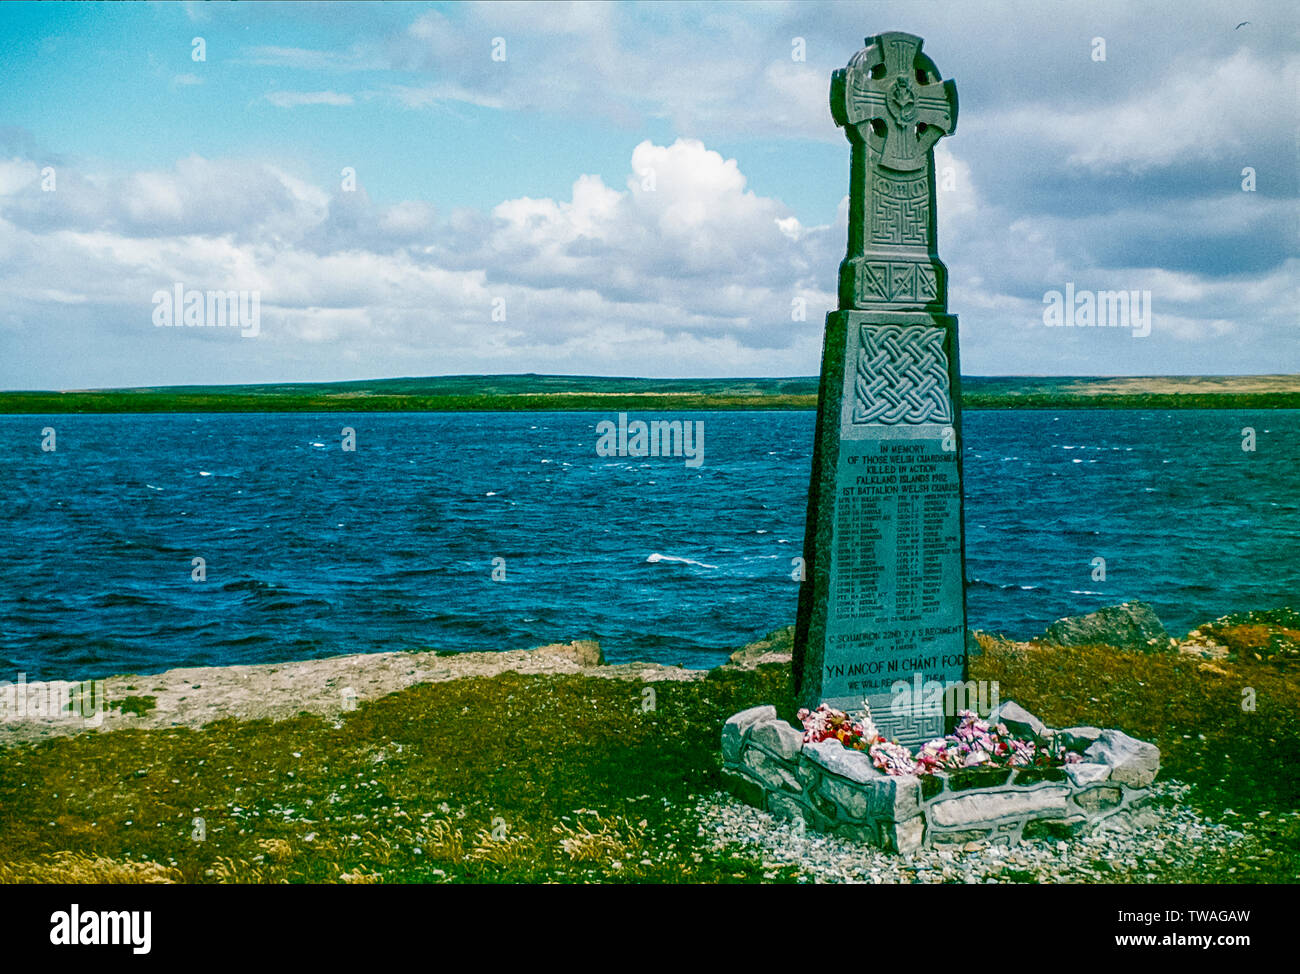 Iles Falkland 1985. Le Welsh Guards war memorial au hameau de Fitzroy sur West Falkland qui fut le site du naufrage du Sir Galahad de troupes par l'armée de l'Argentine durant la guerre Falklands-Argentine 1982 Banque D'Images